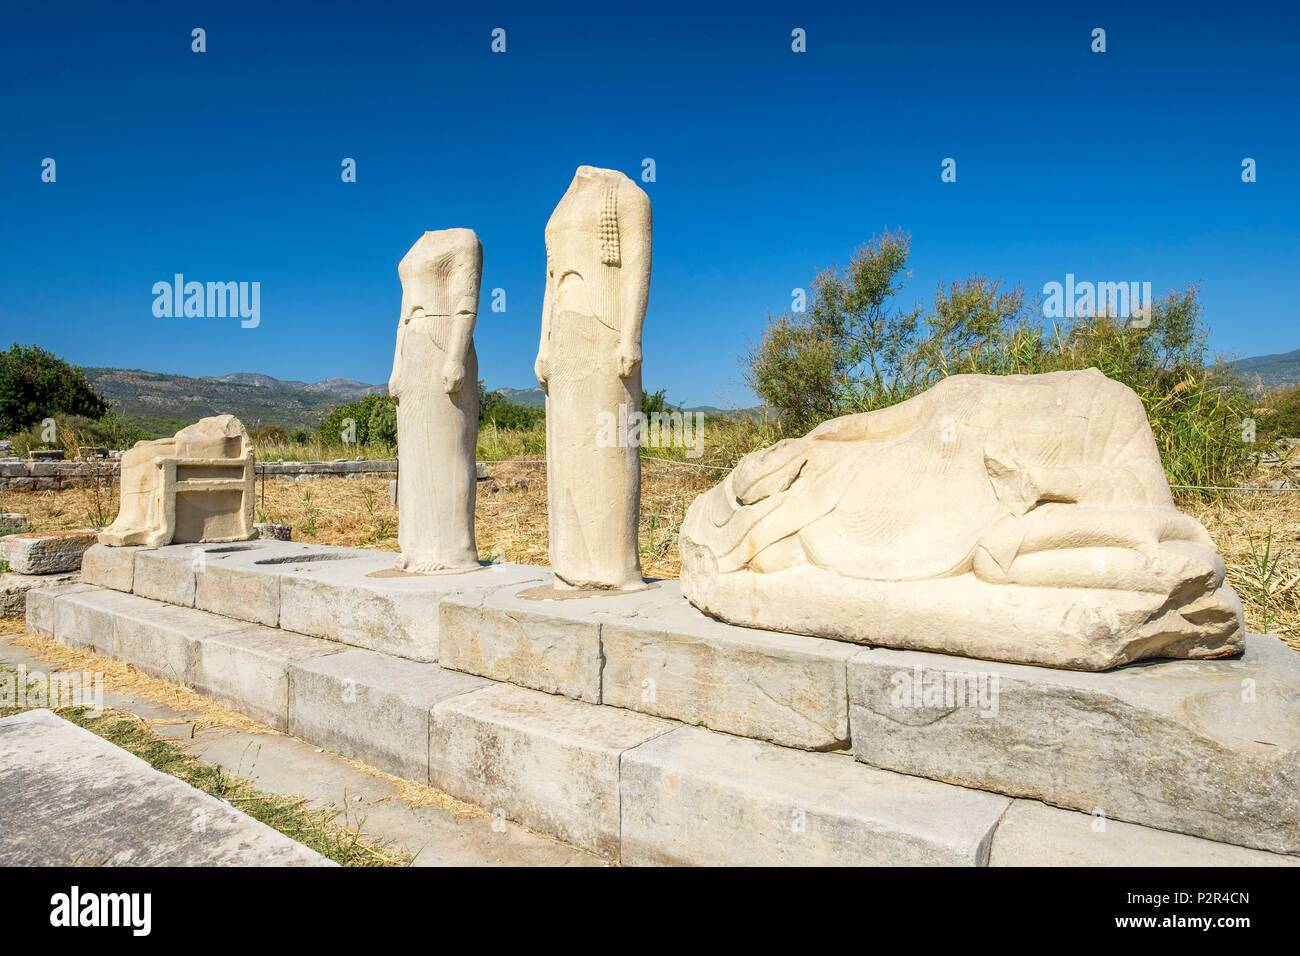 La Grecia, isola di Samos, l Heraion di Samos è uno dei più importanti ioniche giganti santuari della Grecia antica, dedicato alla dea Hera (patrimonio mondiale dell'UNESCO), statua gruppo da Geneleos Foto Stock